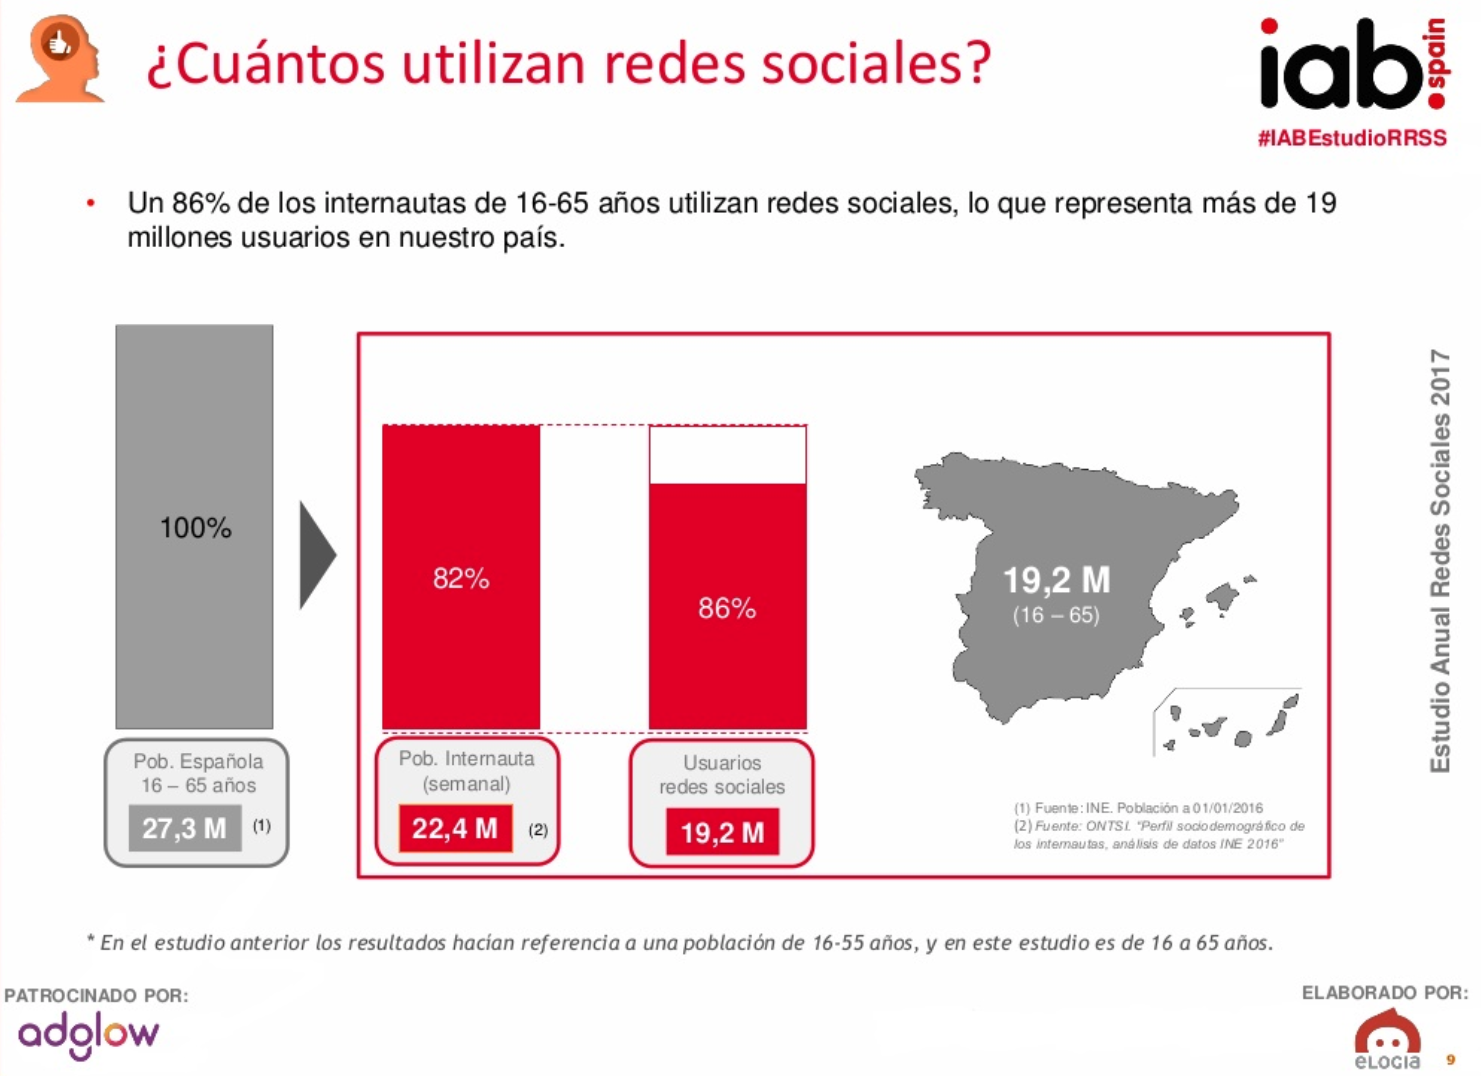 Usuarios de redes sociales en España